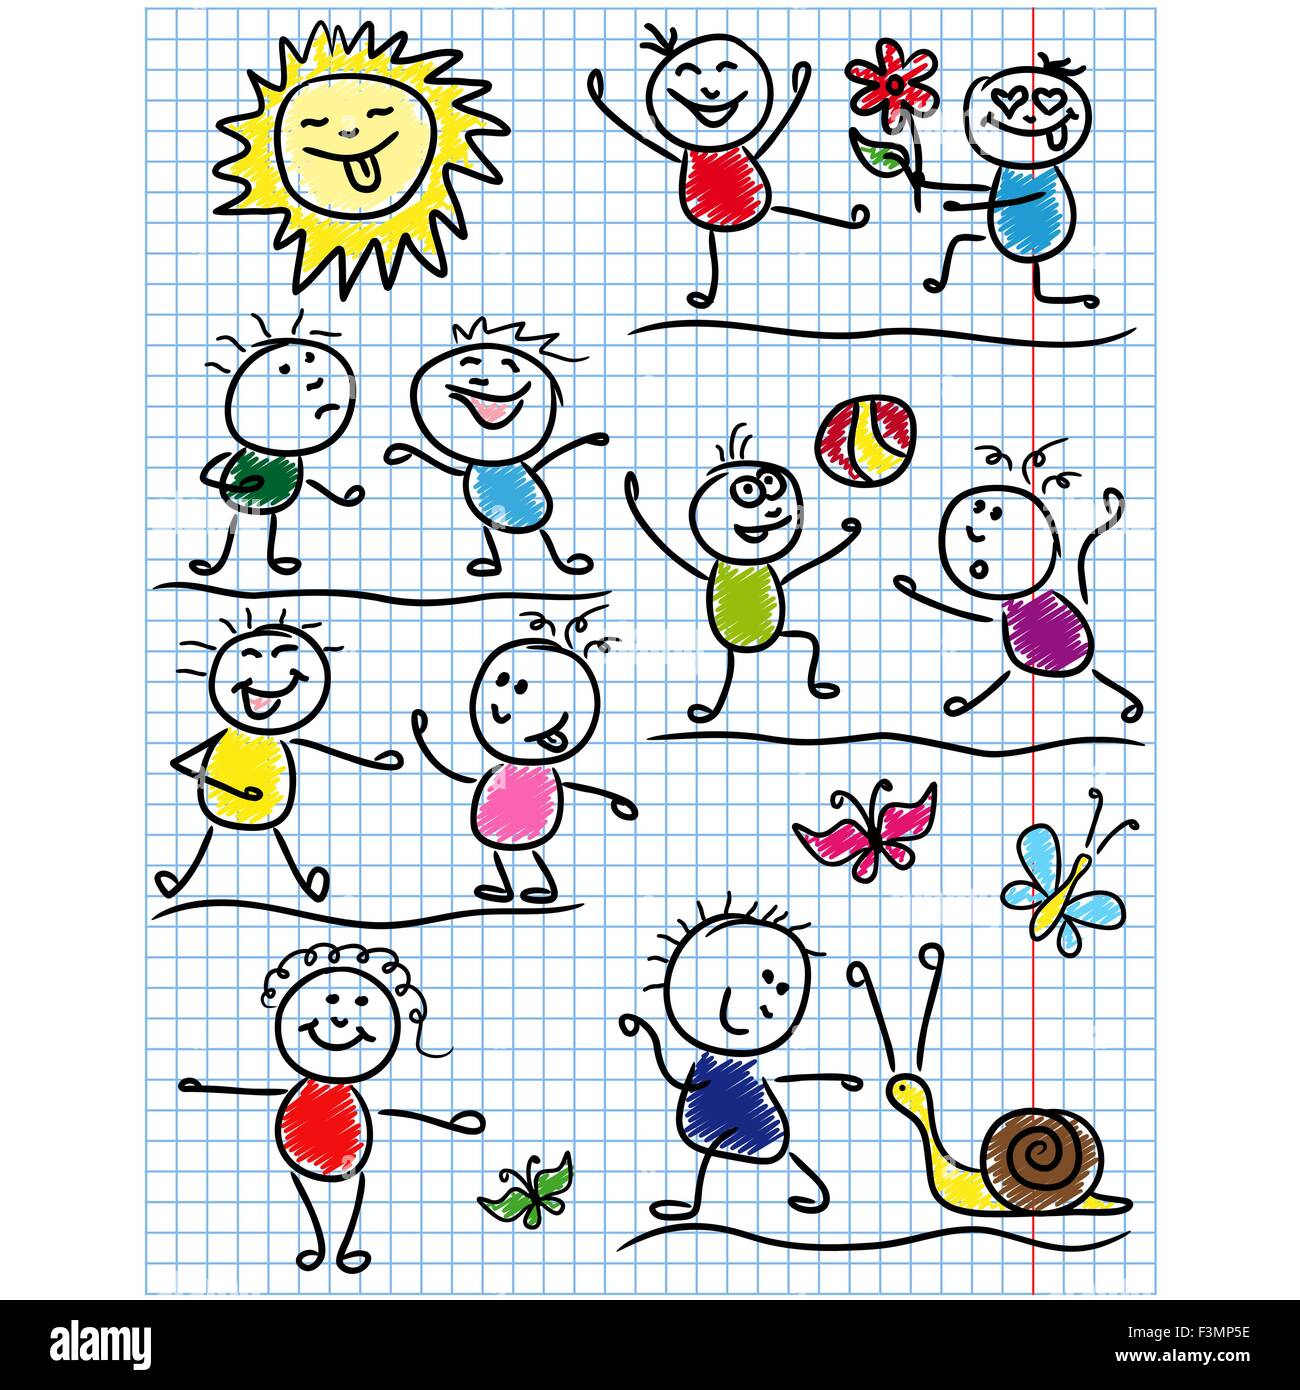 Amüsante Szenen mit lächelnde Sonne und mehrere Kind zahlen, farbige Karikatur Vektorgrafiken als kindliche Zeichnung o skizzieren Stock Vektor